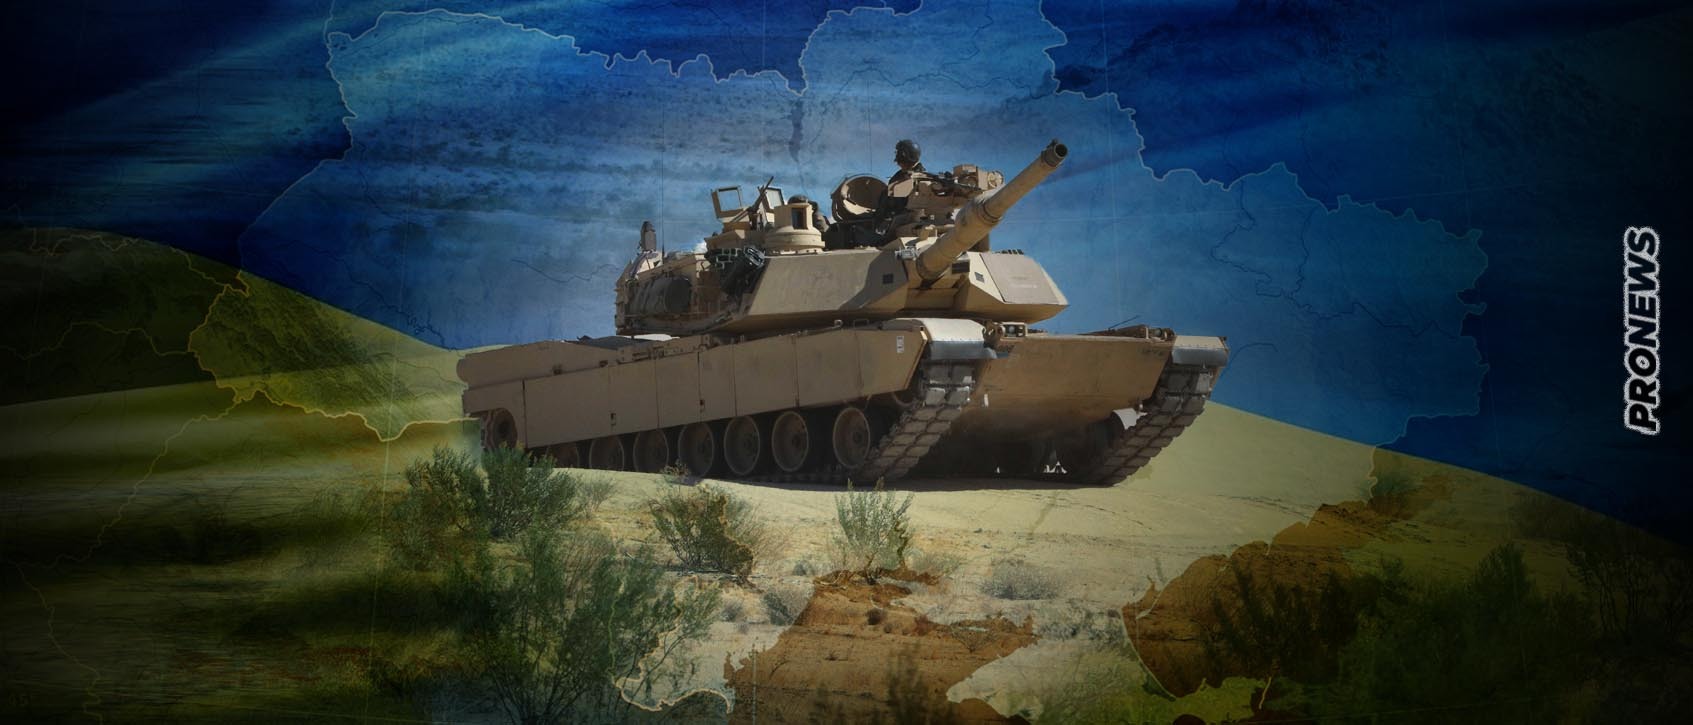 Από Οκτώβριο «και βλέπουμε…» η παράδοση των αμερικανικών αρμάτων M1A2 Abrams στην Ουκρανία! – «Τότε θα είναι έτοιμα» λένε οι Αμερικανοί